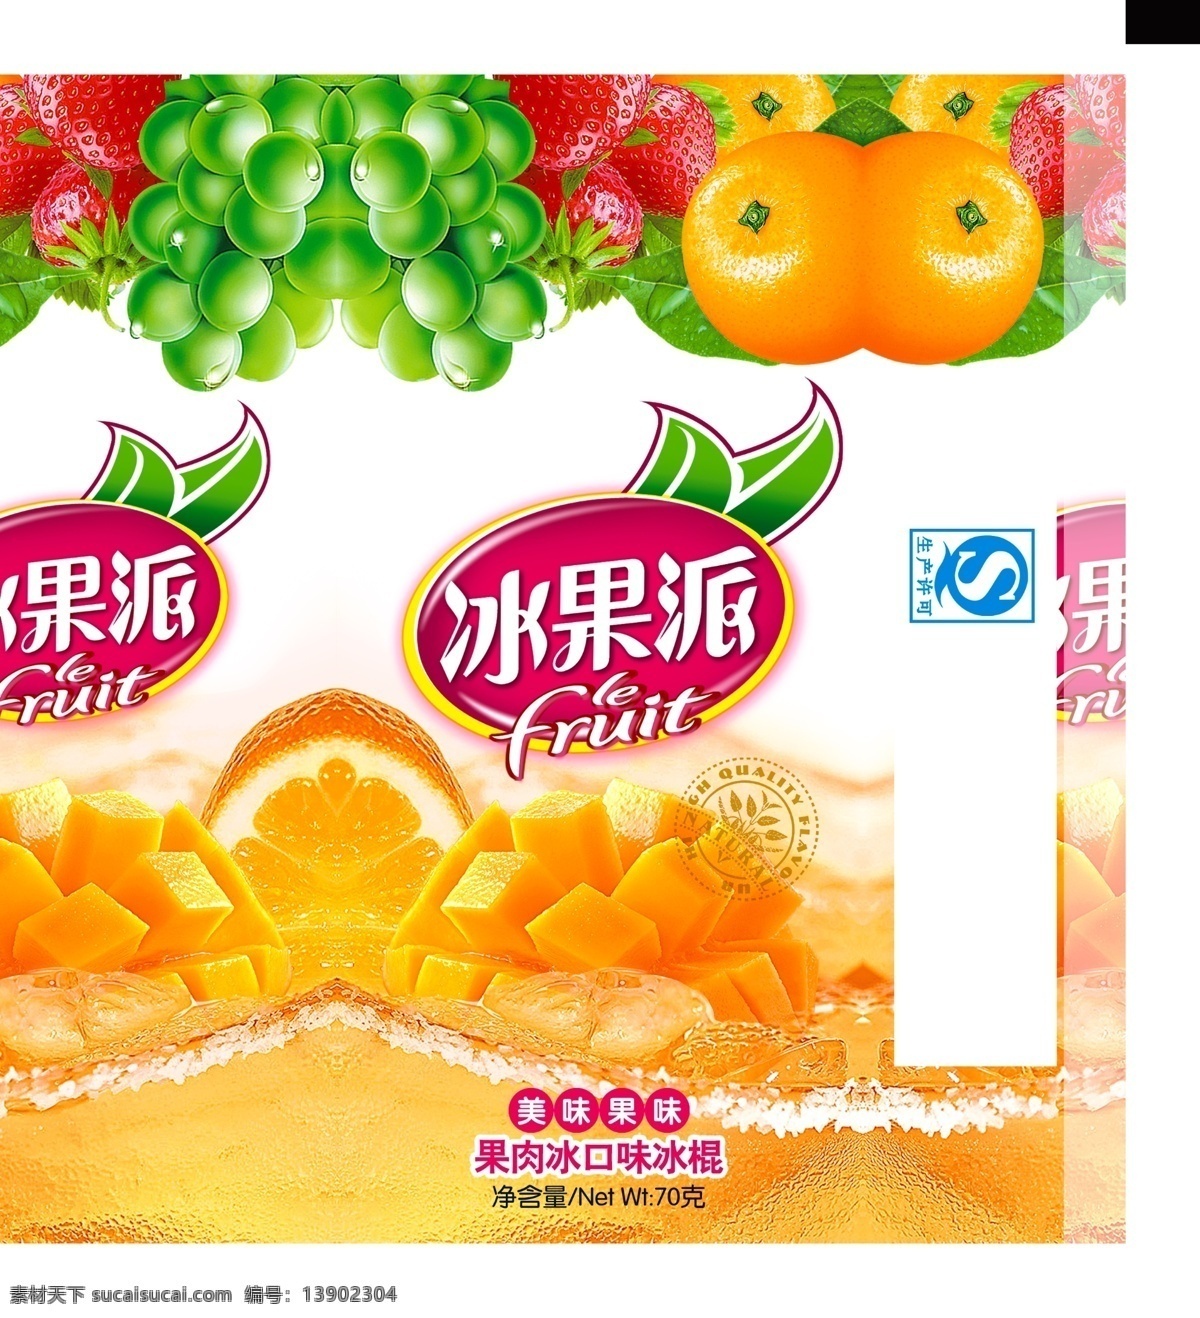 冰果 派 雪糕 草莓 橙子 葡萄 水果底 psd源文件 包装设计